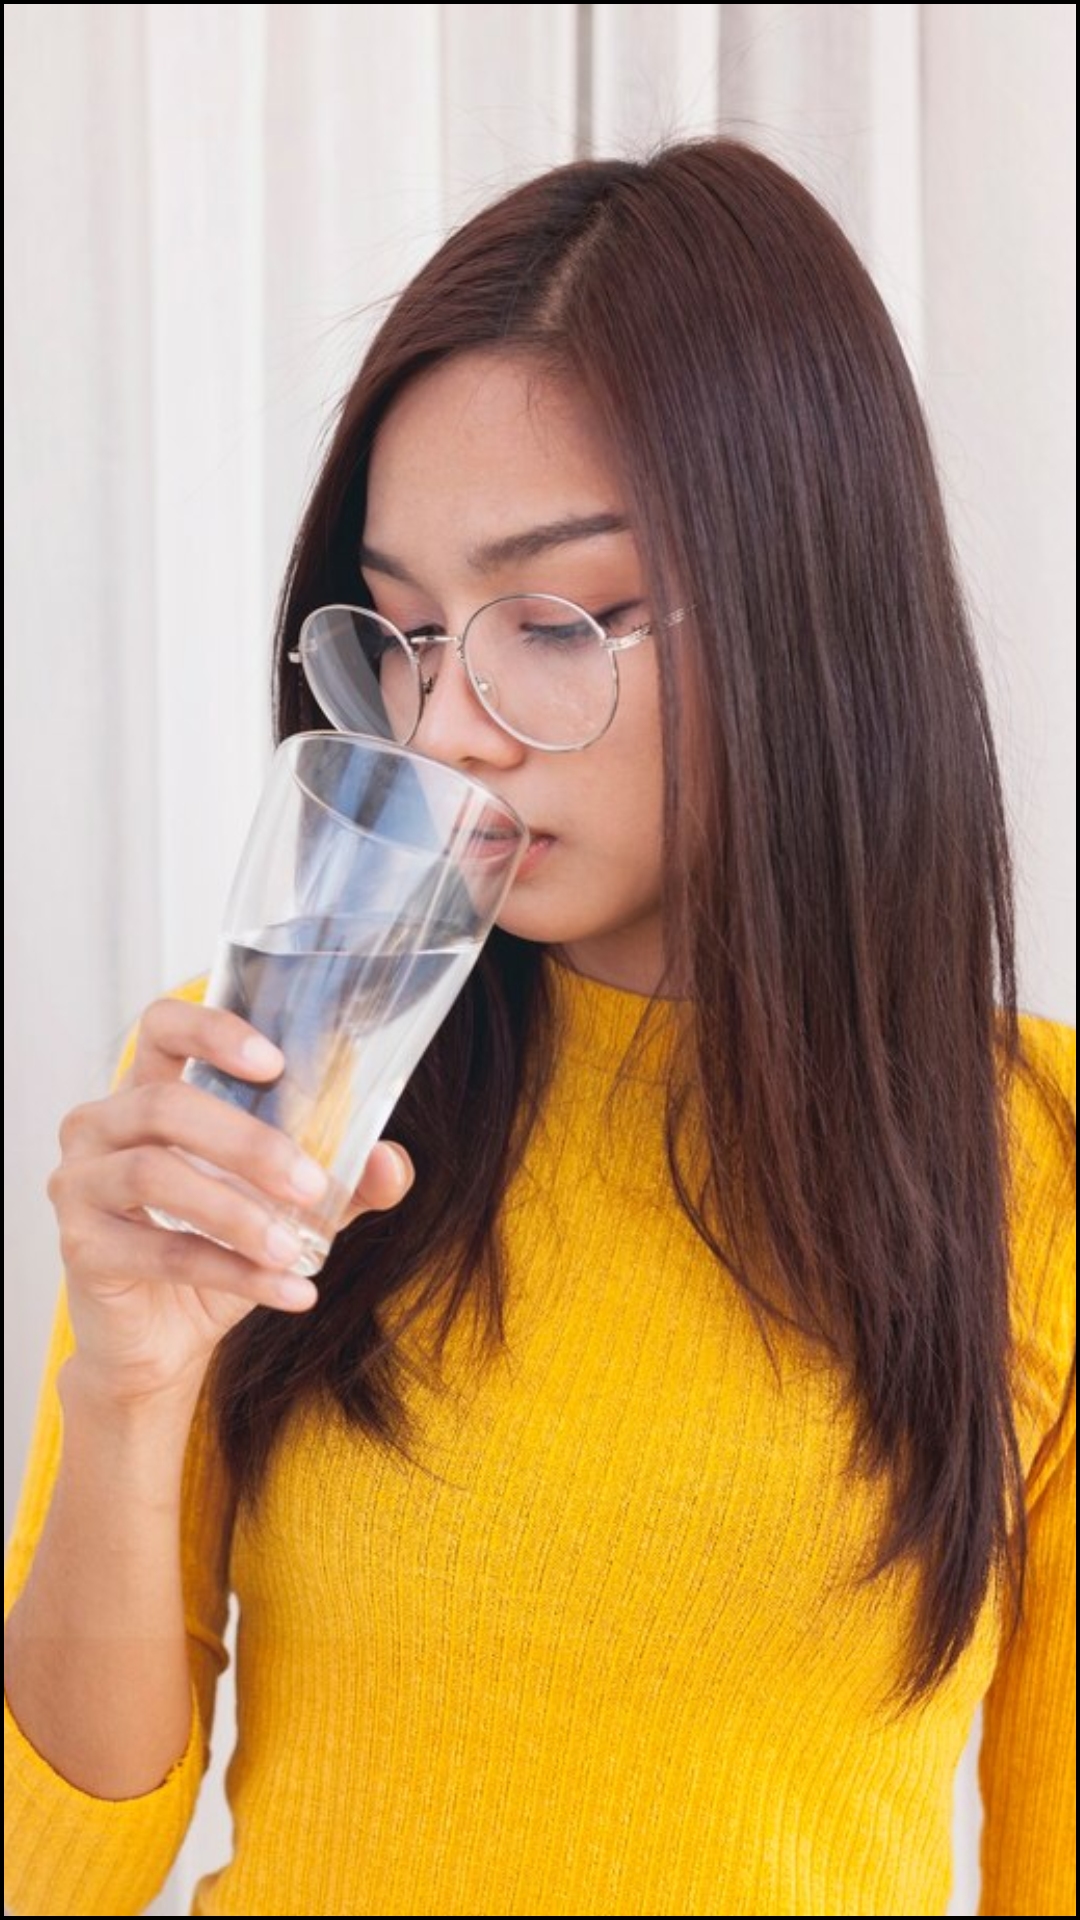 90 प्रतिशत लोग गलत तरीके से पीते हैं पानी, जानिए सही क्या है? 